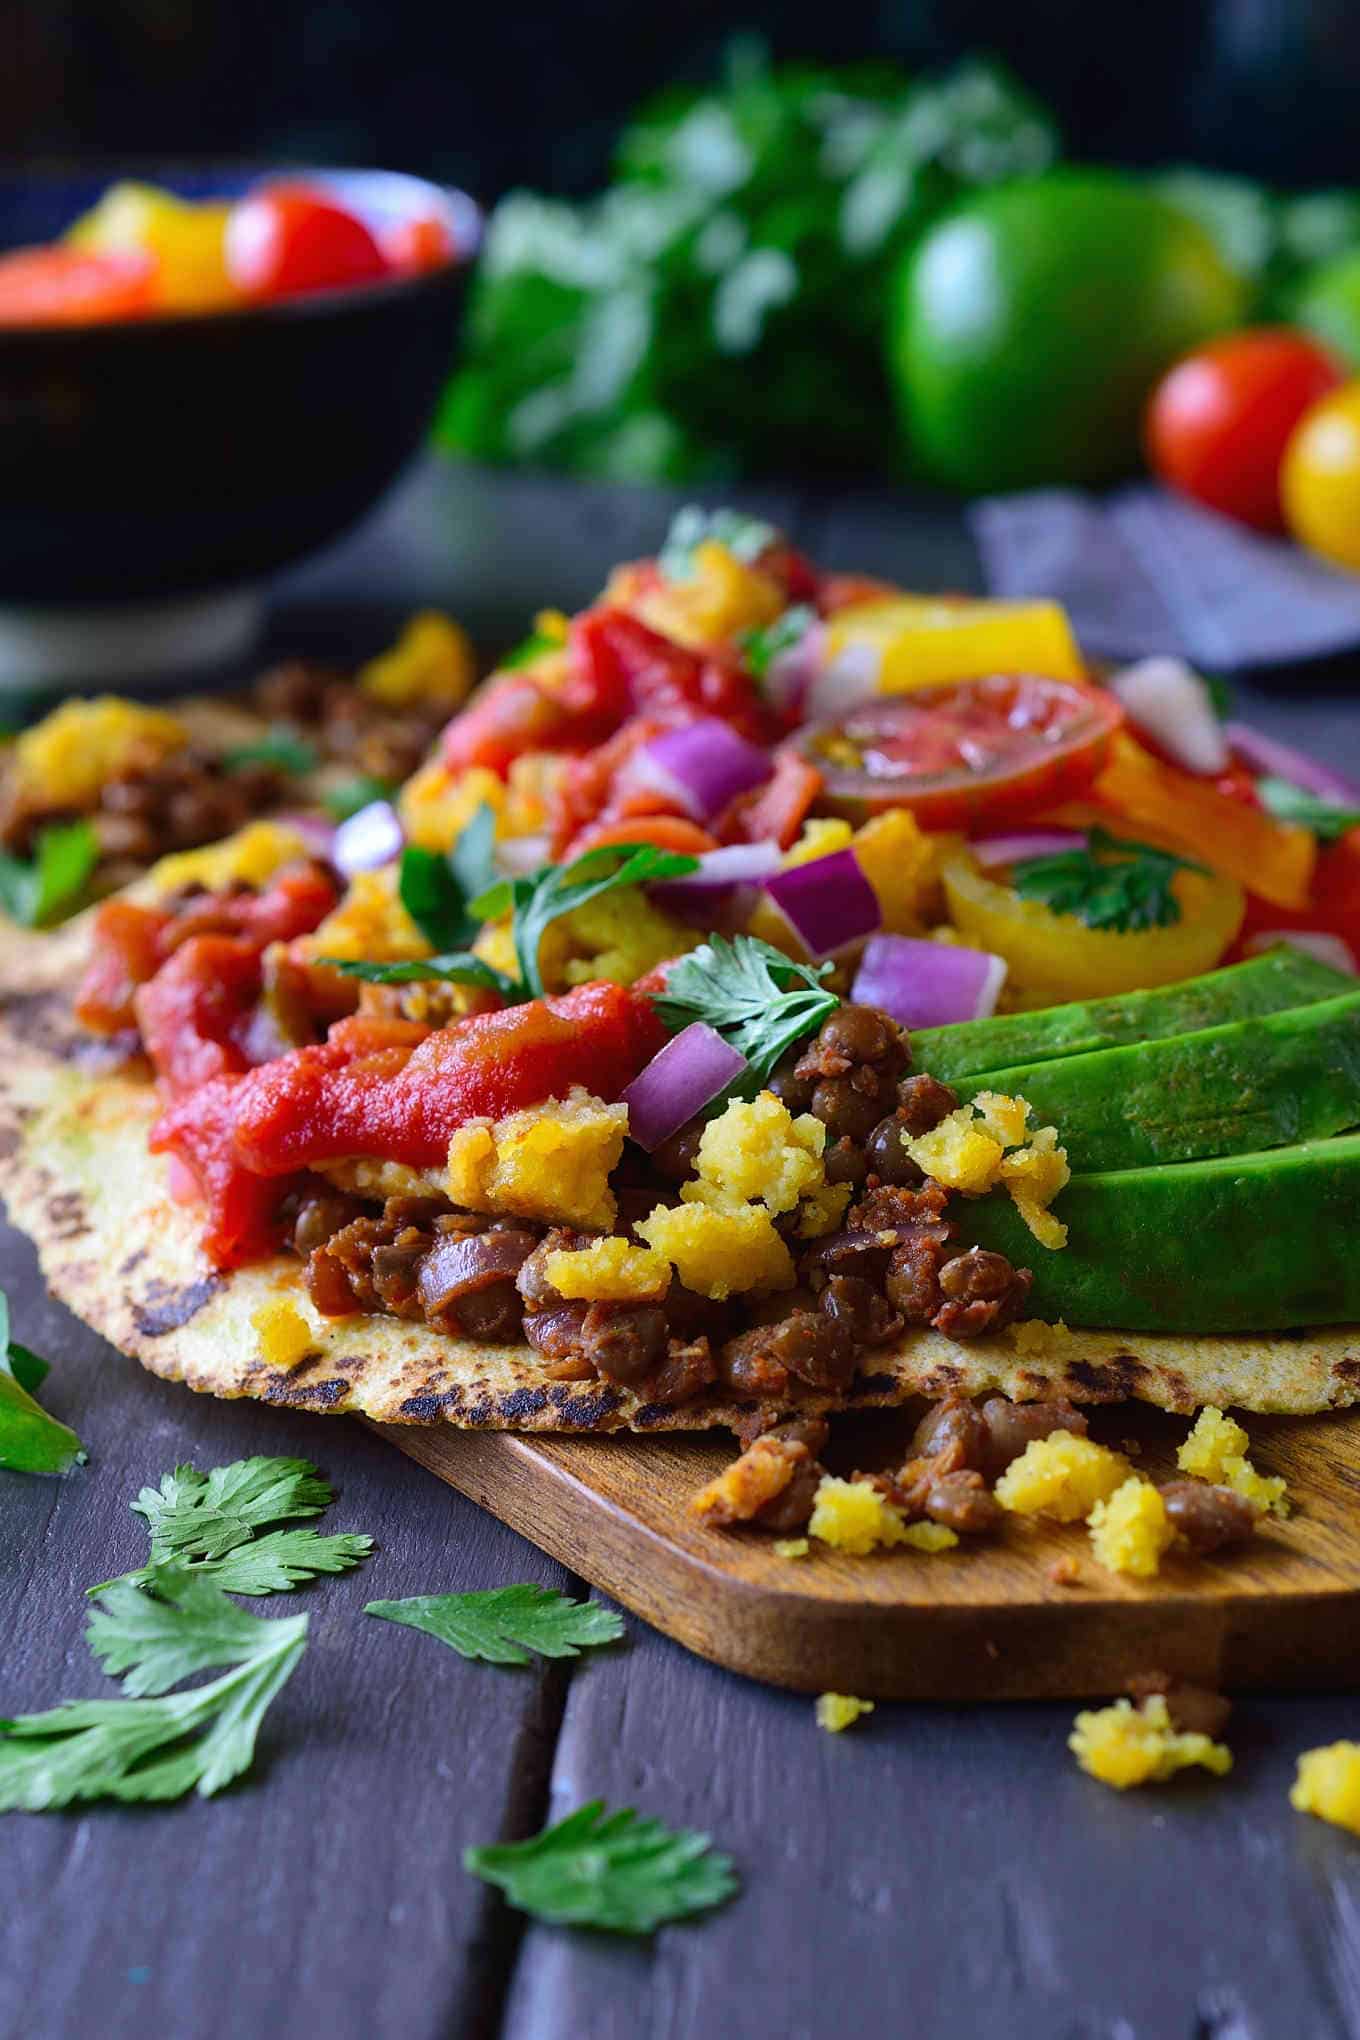 otwarte taco na desce przedstawiającej nadzienie z soczewicy, mąki z ciecierzycy, jaj, pomidorów i awokado.